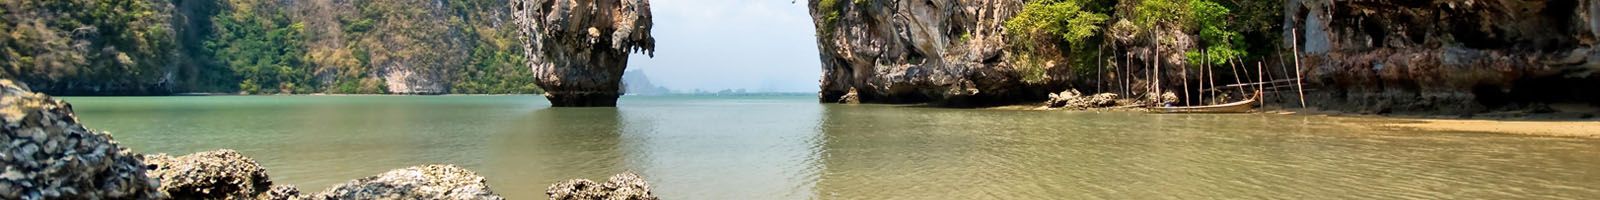 Tour du lịch Thái Lan giá rẻ 2021 - KH hàng ngày từ TPHCM